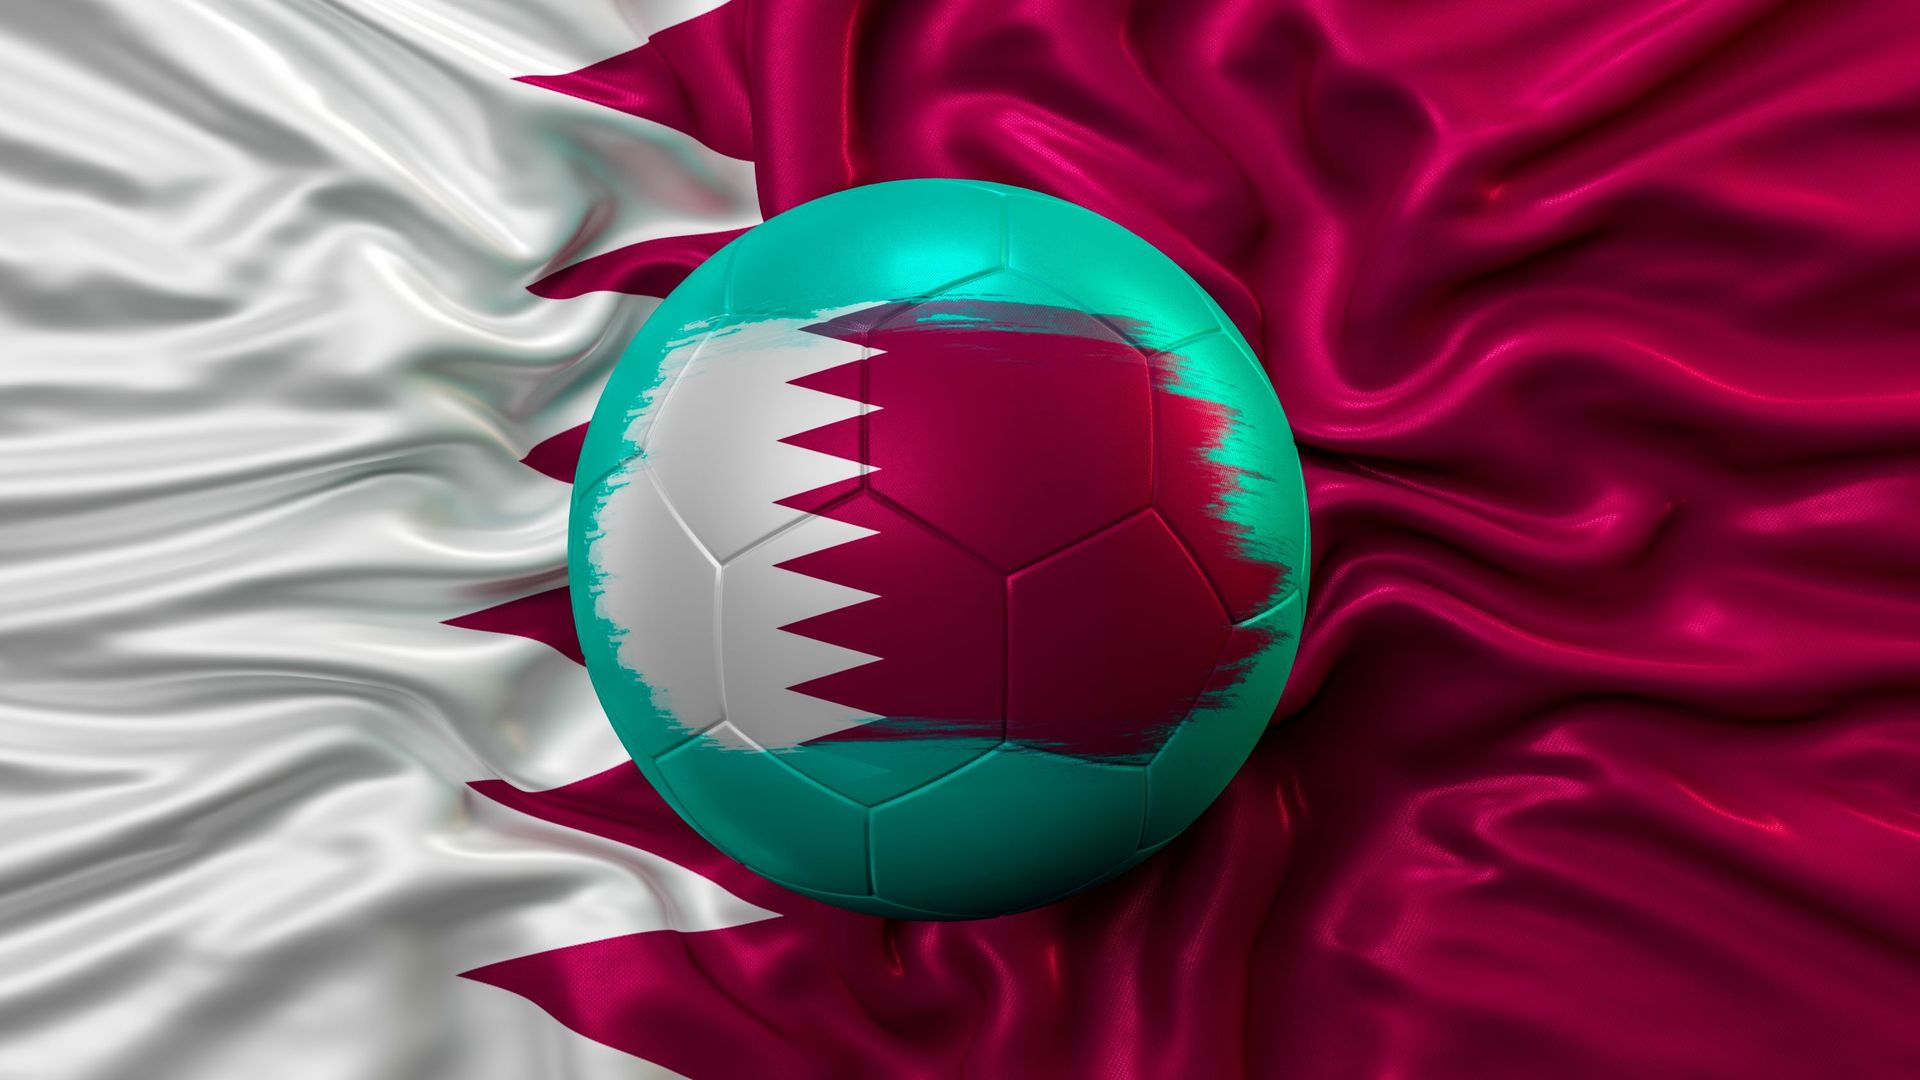 Qatar Flag and Soccer Football Ball With Qatar Flag.